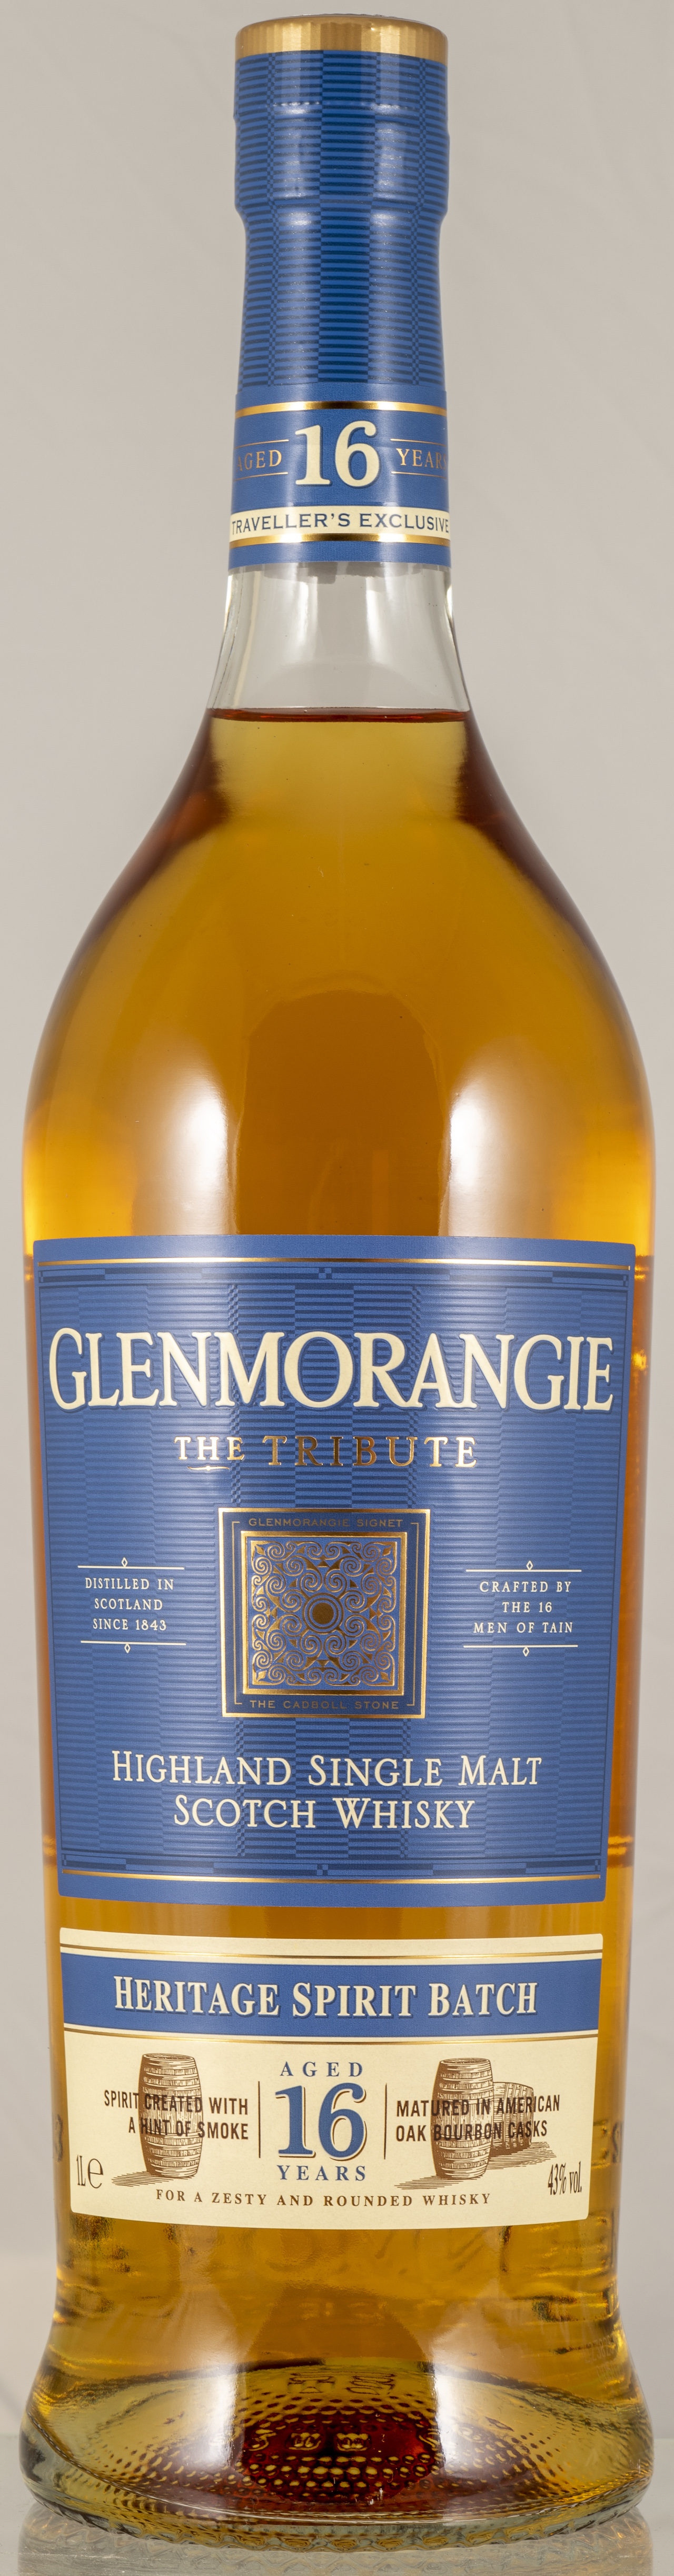 Billede: PHC_7069 - Glenmorangie The Tribute 16 - bottle front.jpg